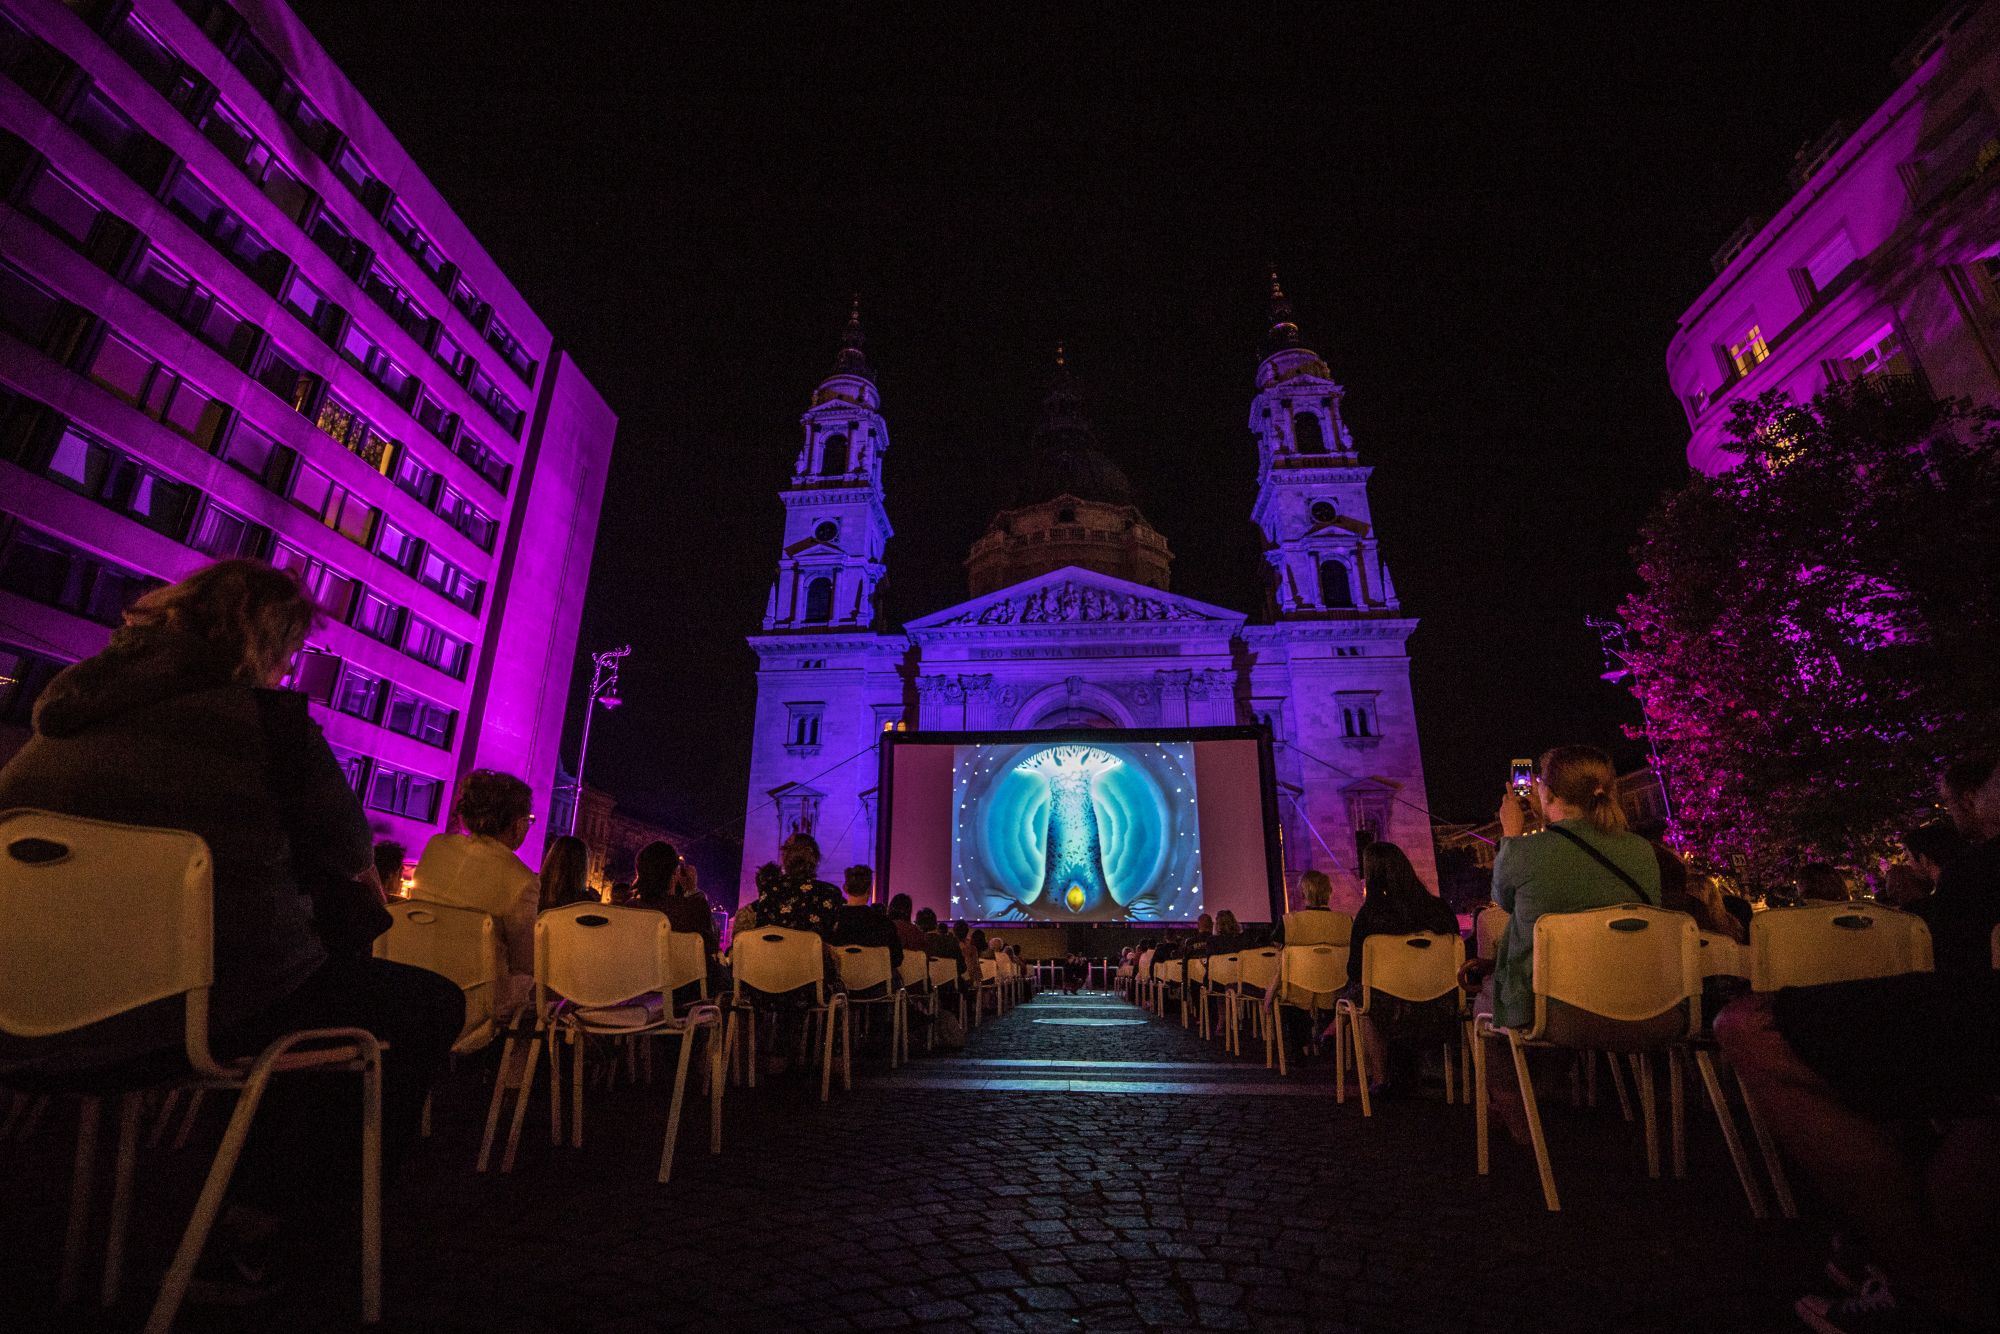 Ingyenes filmvetítések várnak Budapest egyik legszebb helyén, a Szent István téren